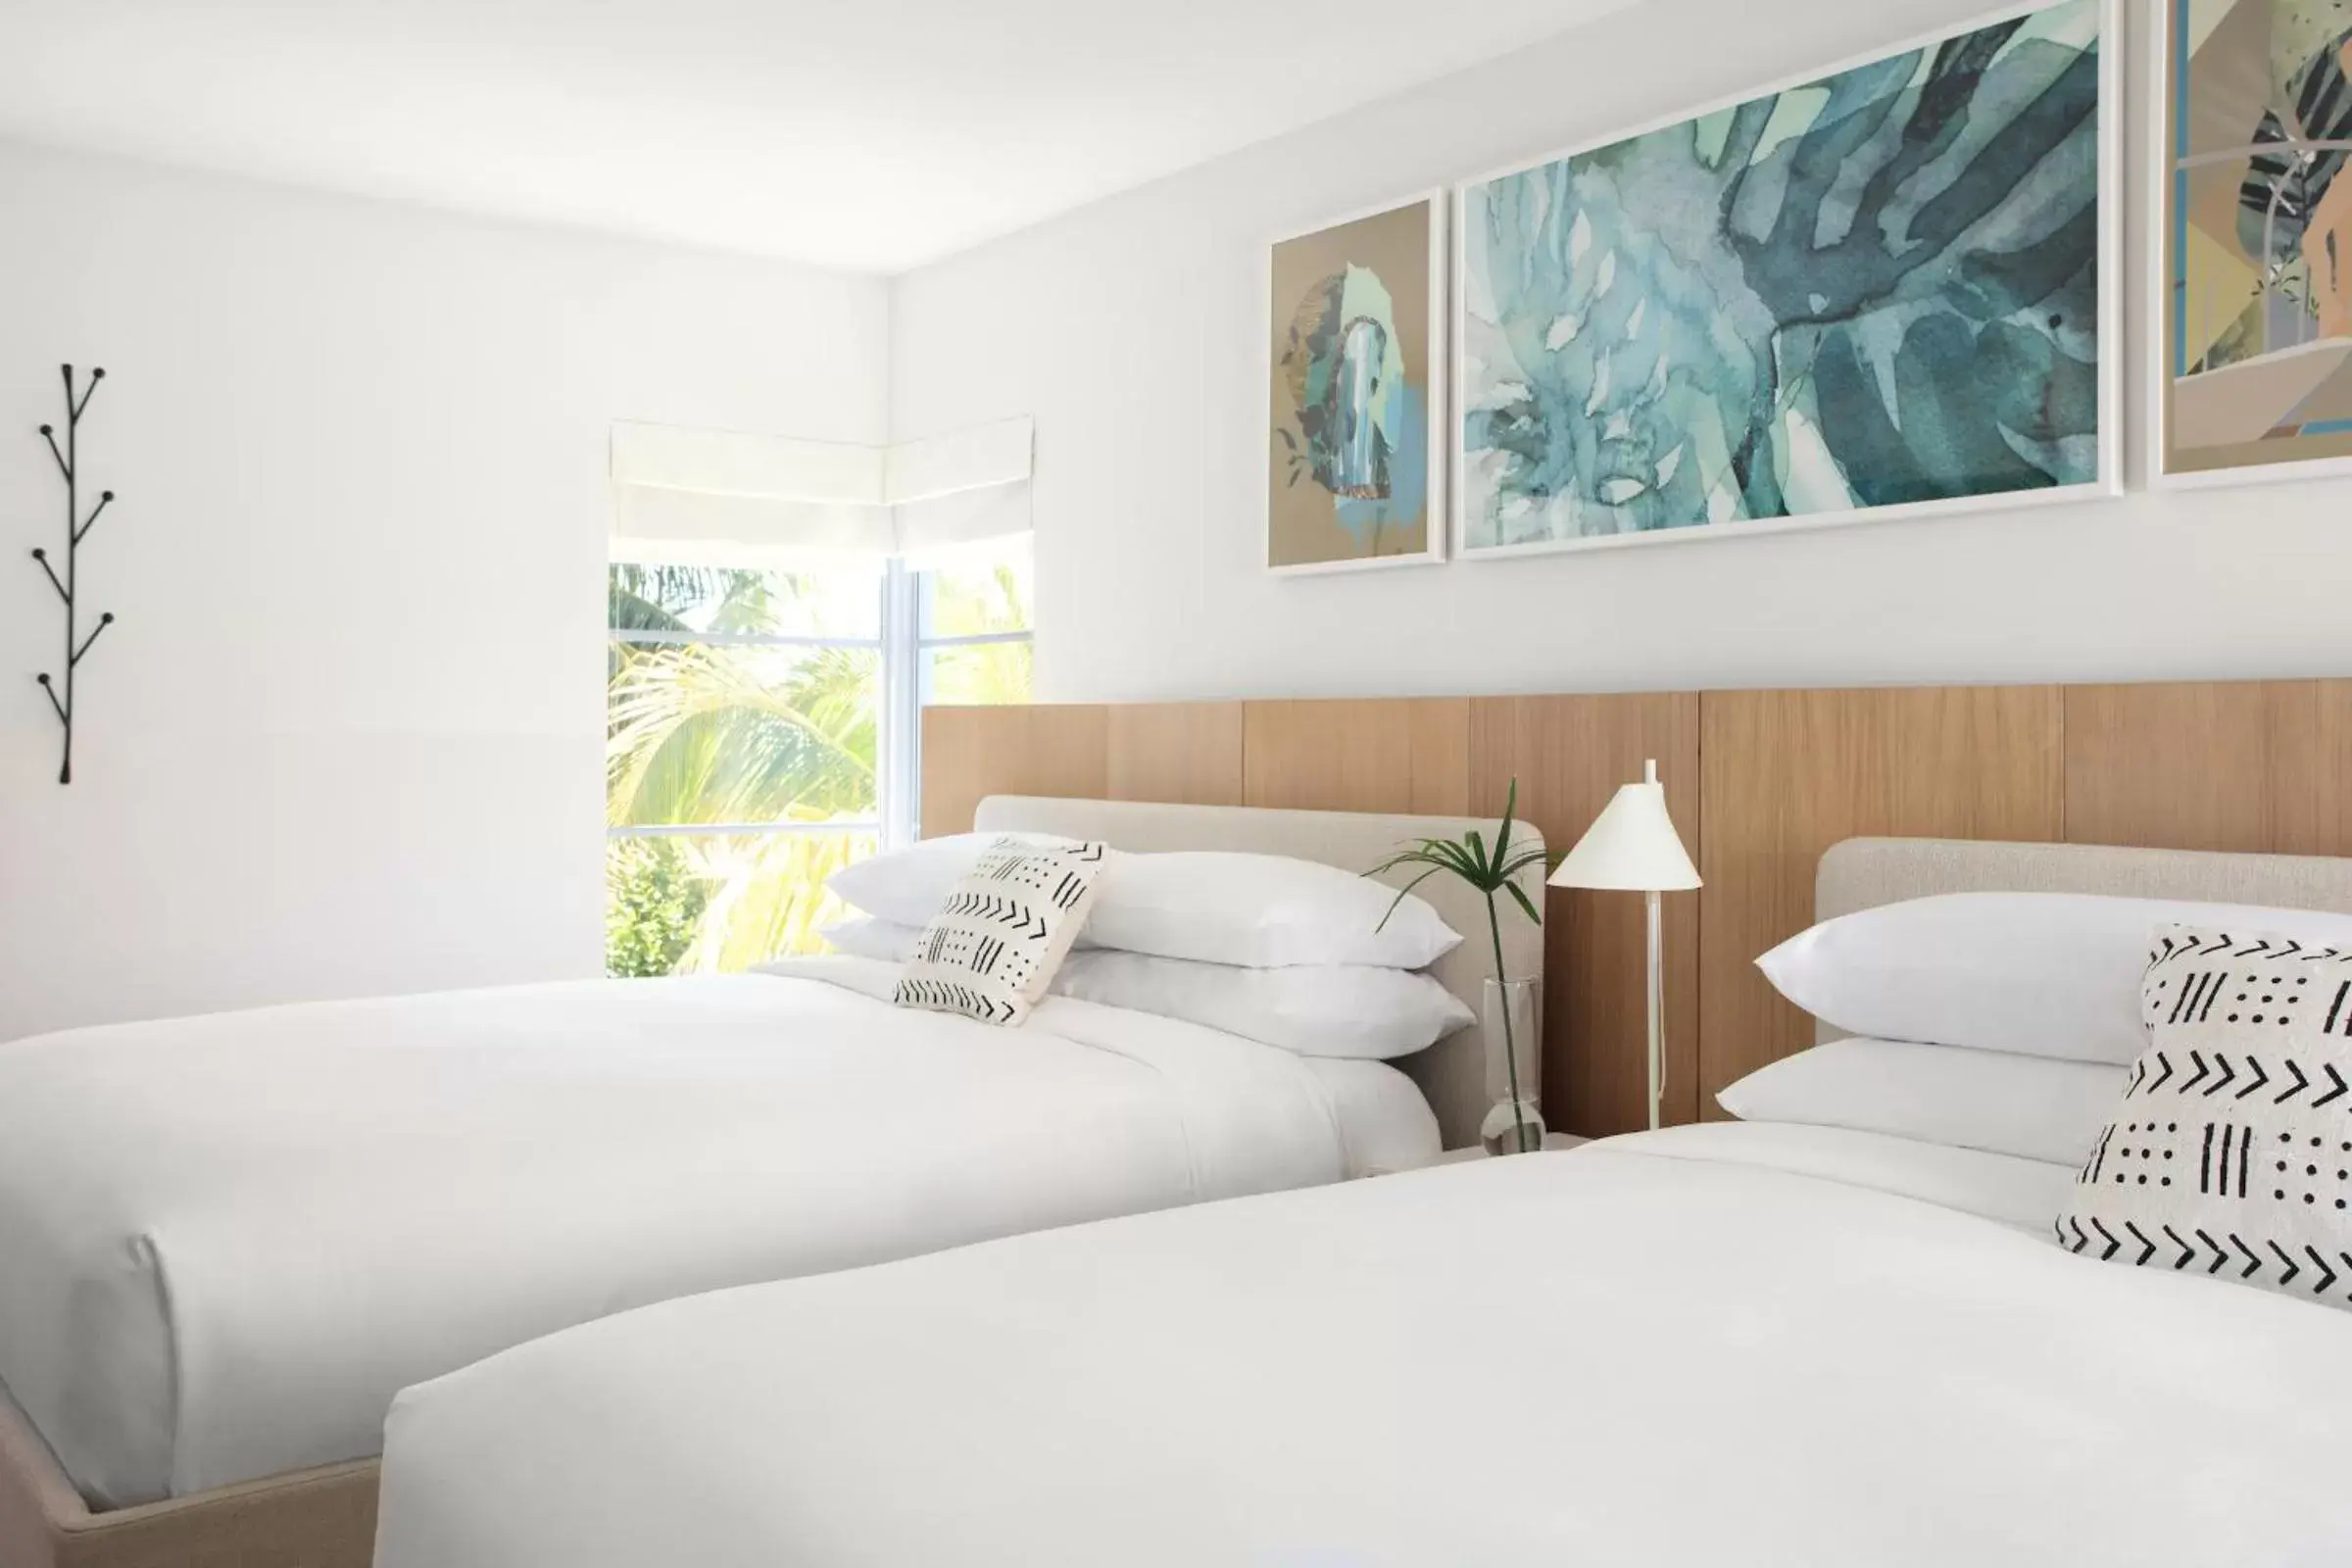 Bed in The Kimpton Shorebreak Fort Lauderdale Beach Resort